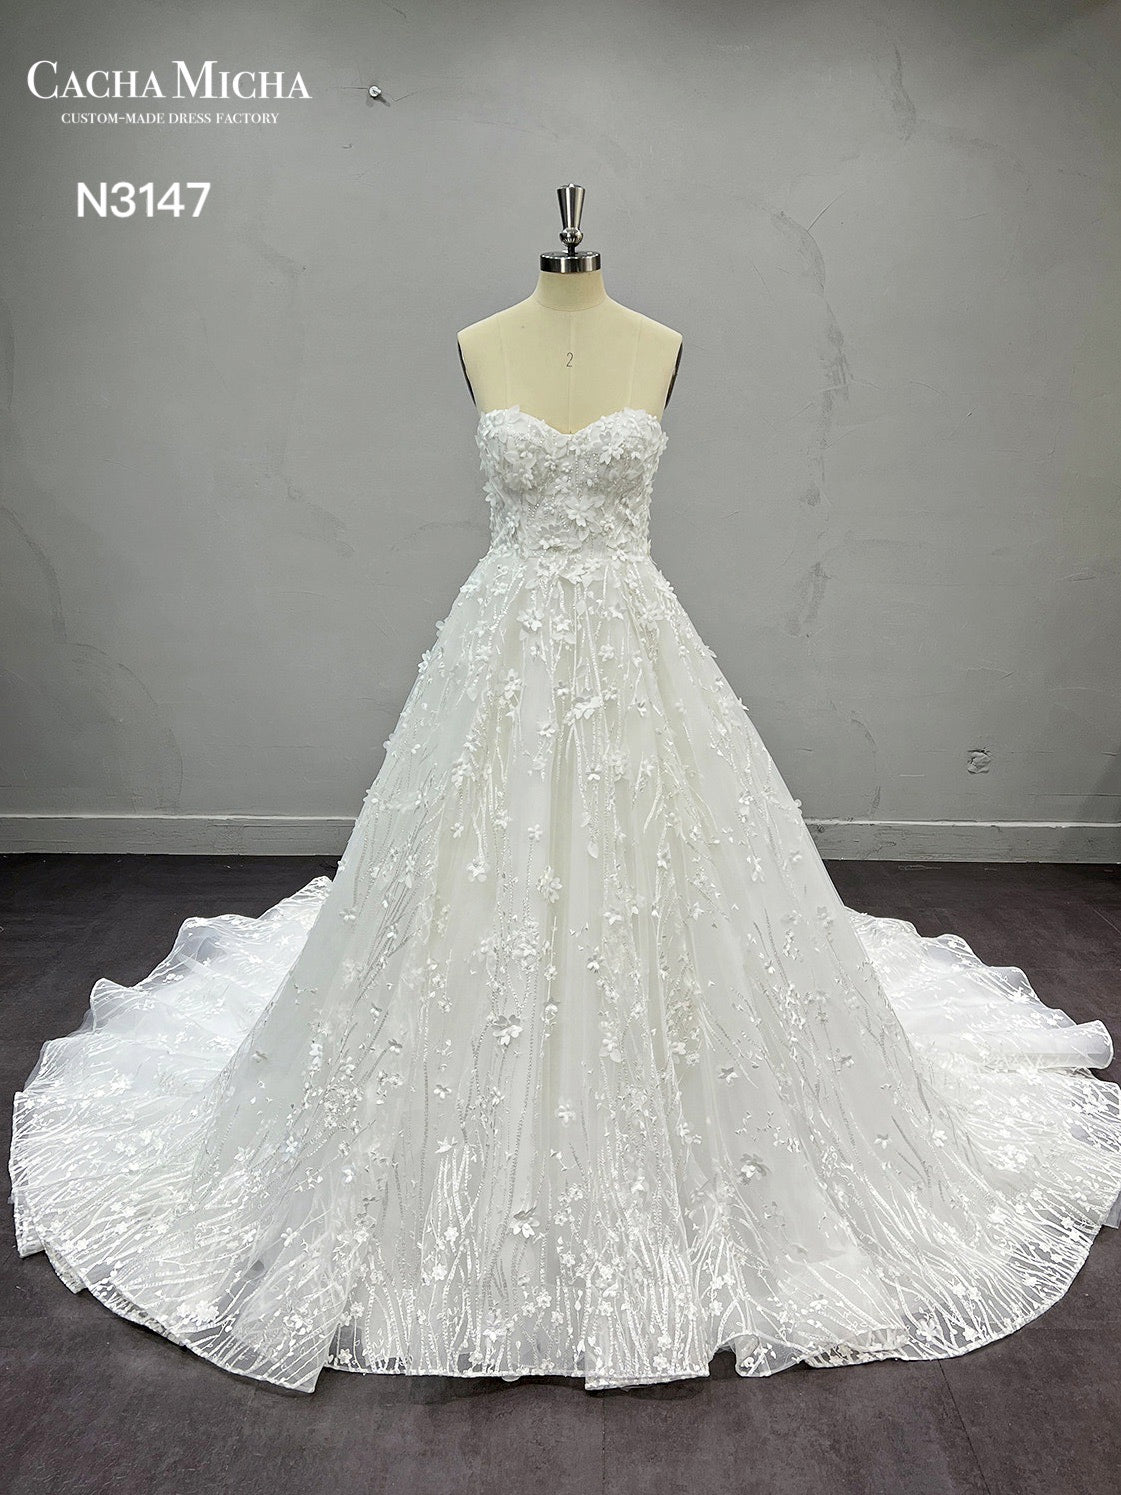 Handmade 3D Flowers Lace Ball Gown Wedding Dress N3147